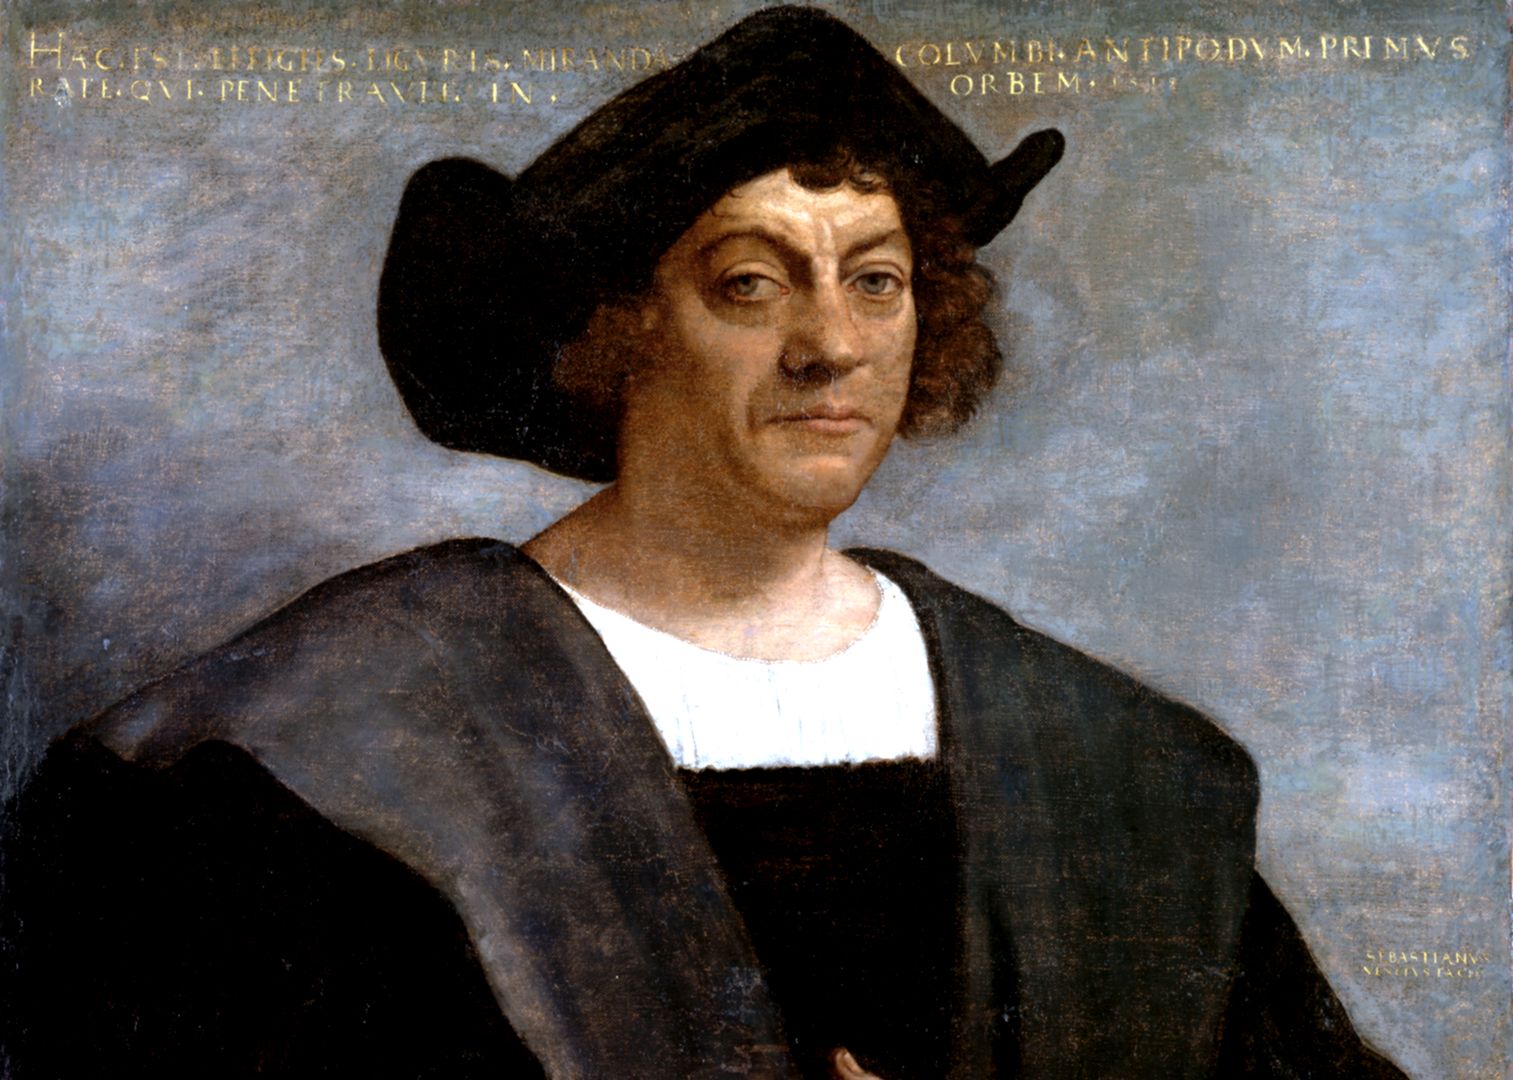 Amerykanie mają dość Kolumba. Powoli usuwają go z historii